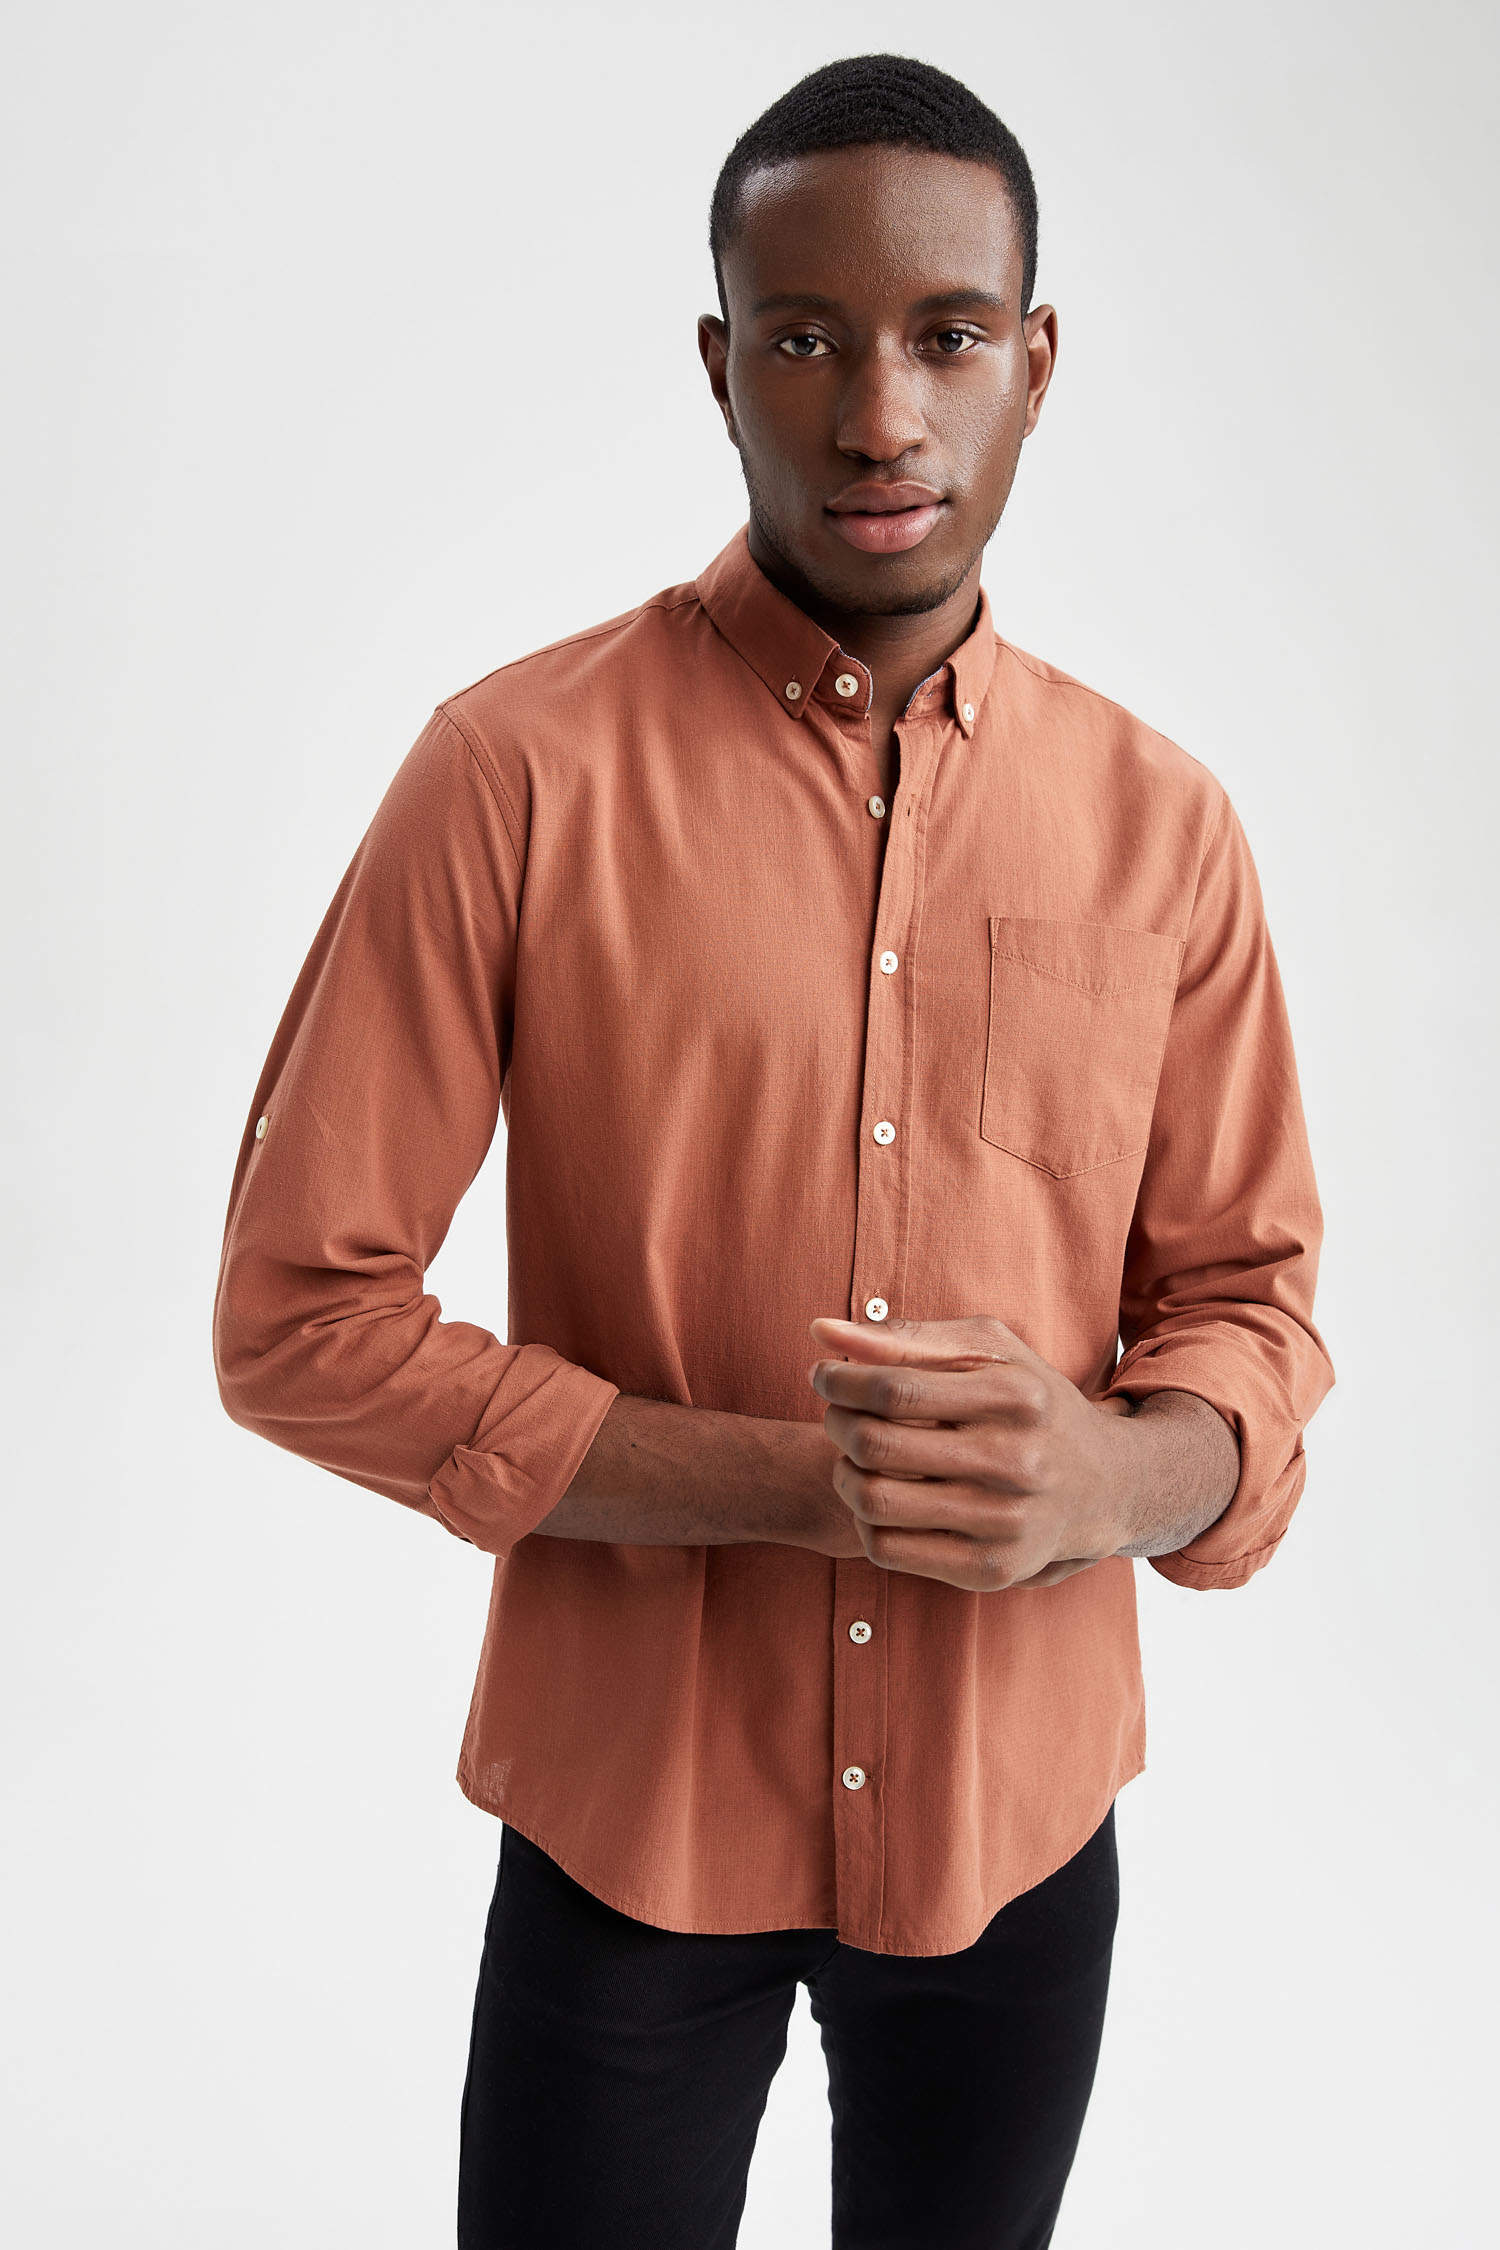 Buy now men's orange slim fit full sleeve shirt